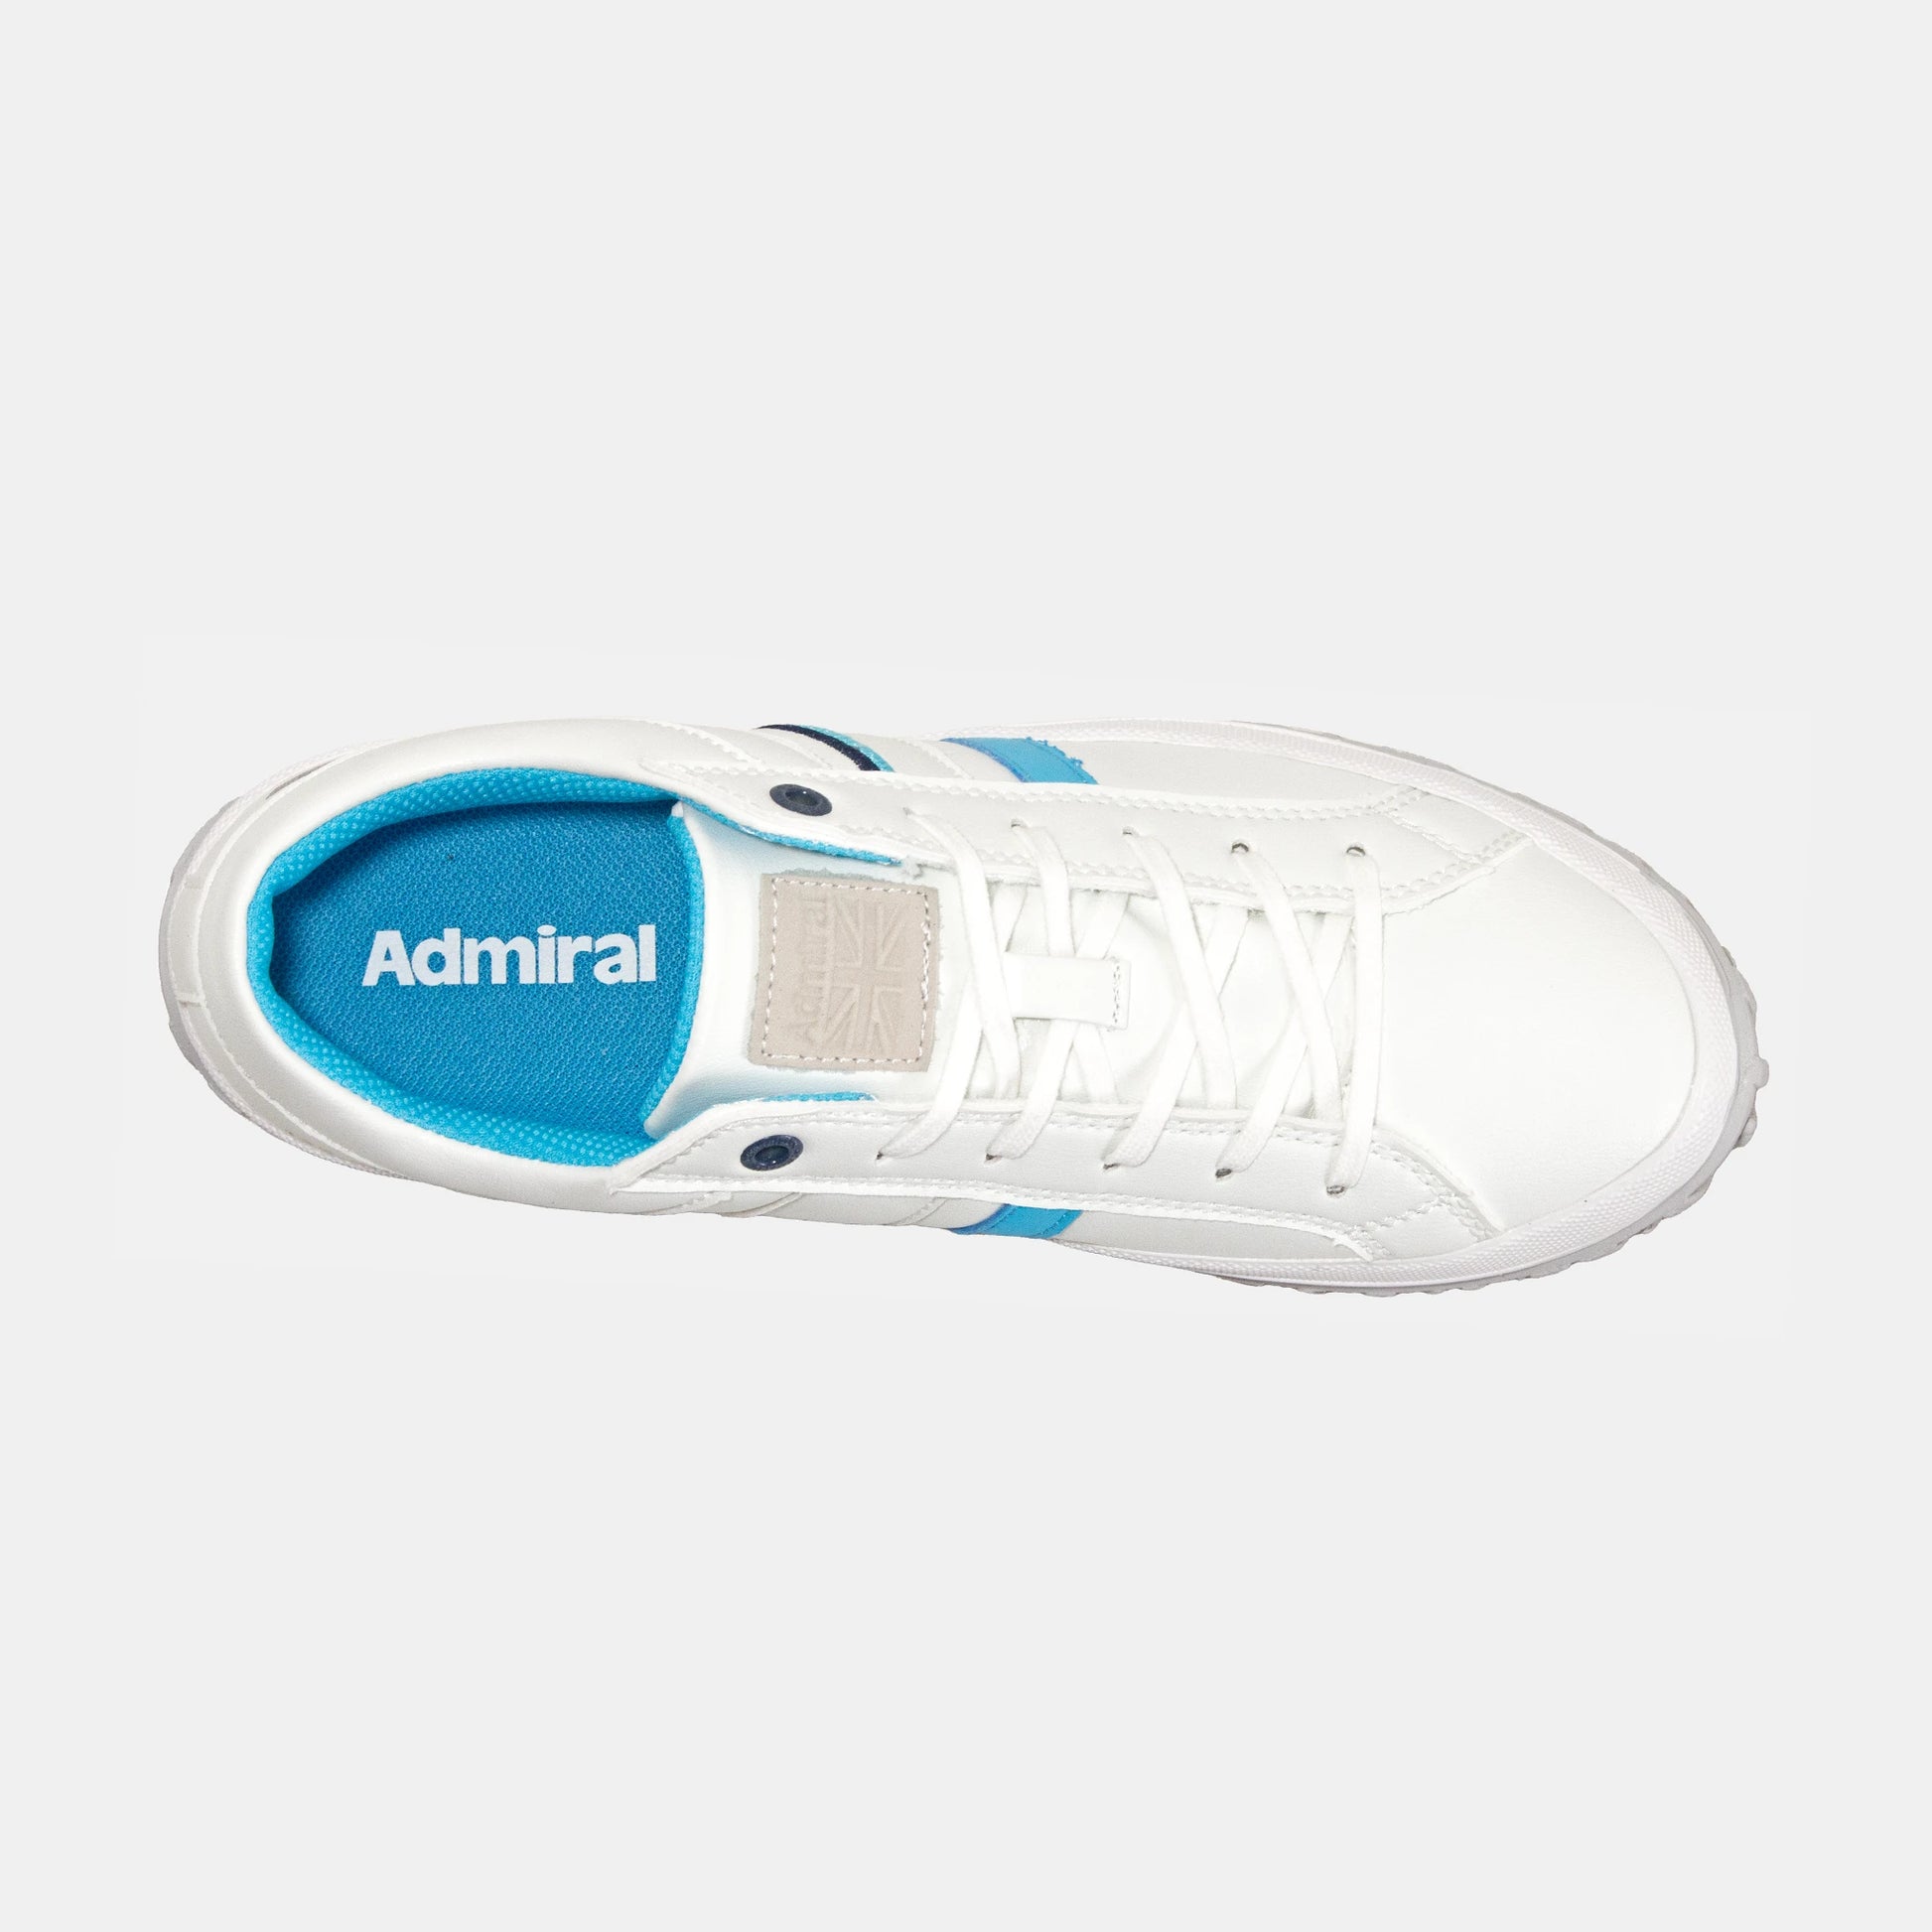 ALLIE　AD901 White/Blue レディース - AdmiralSPORTS